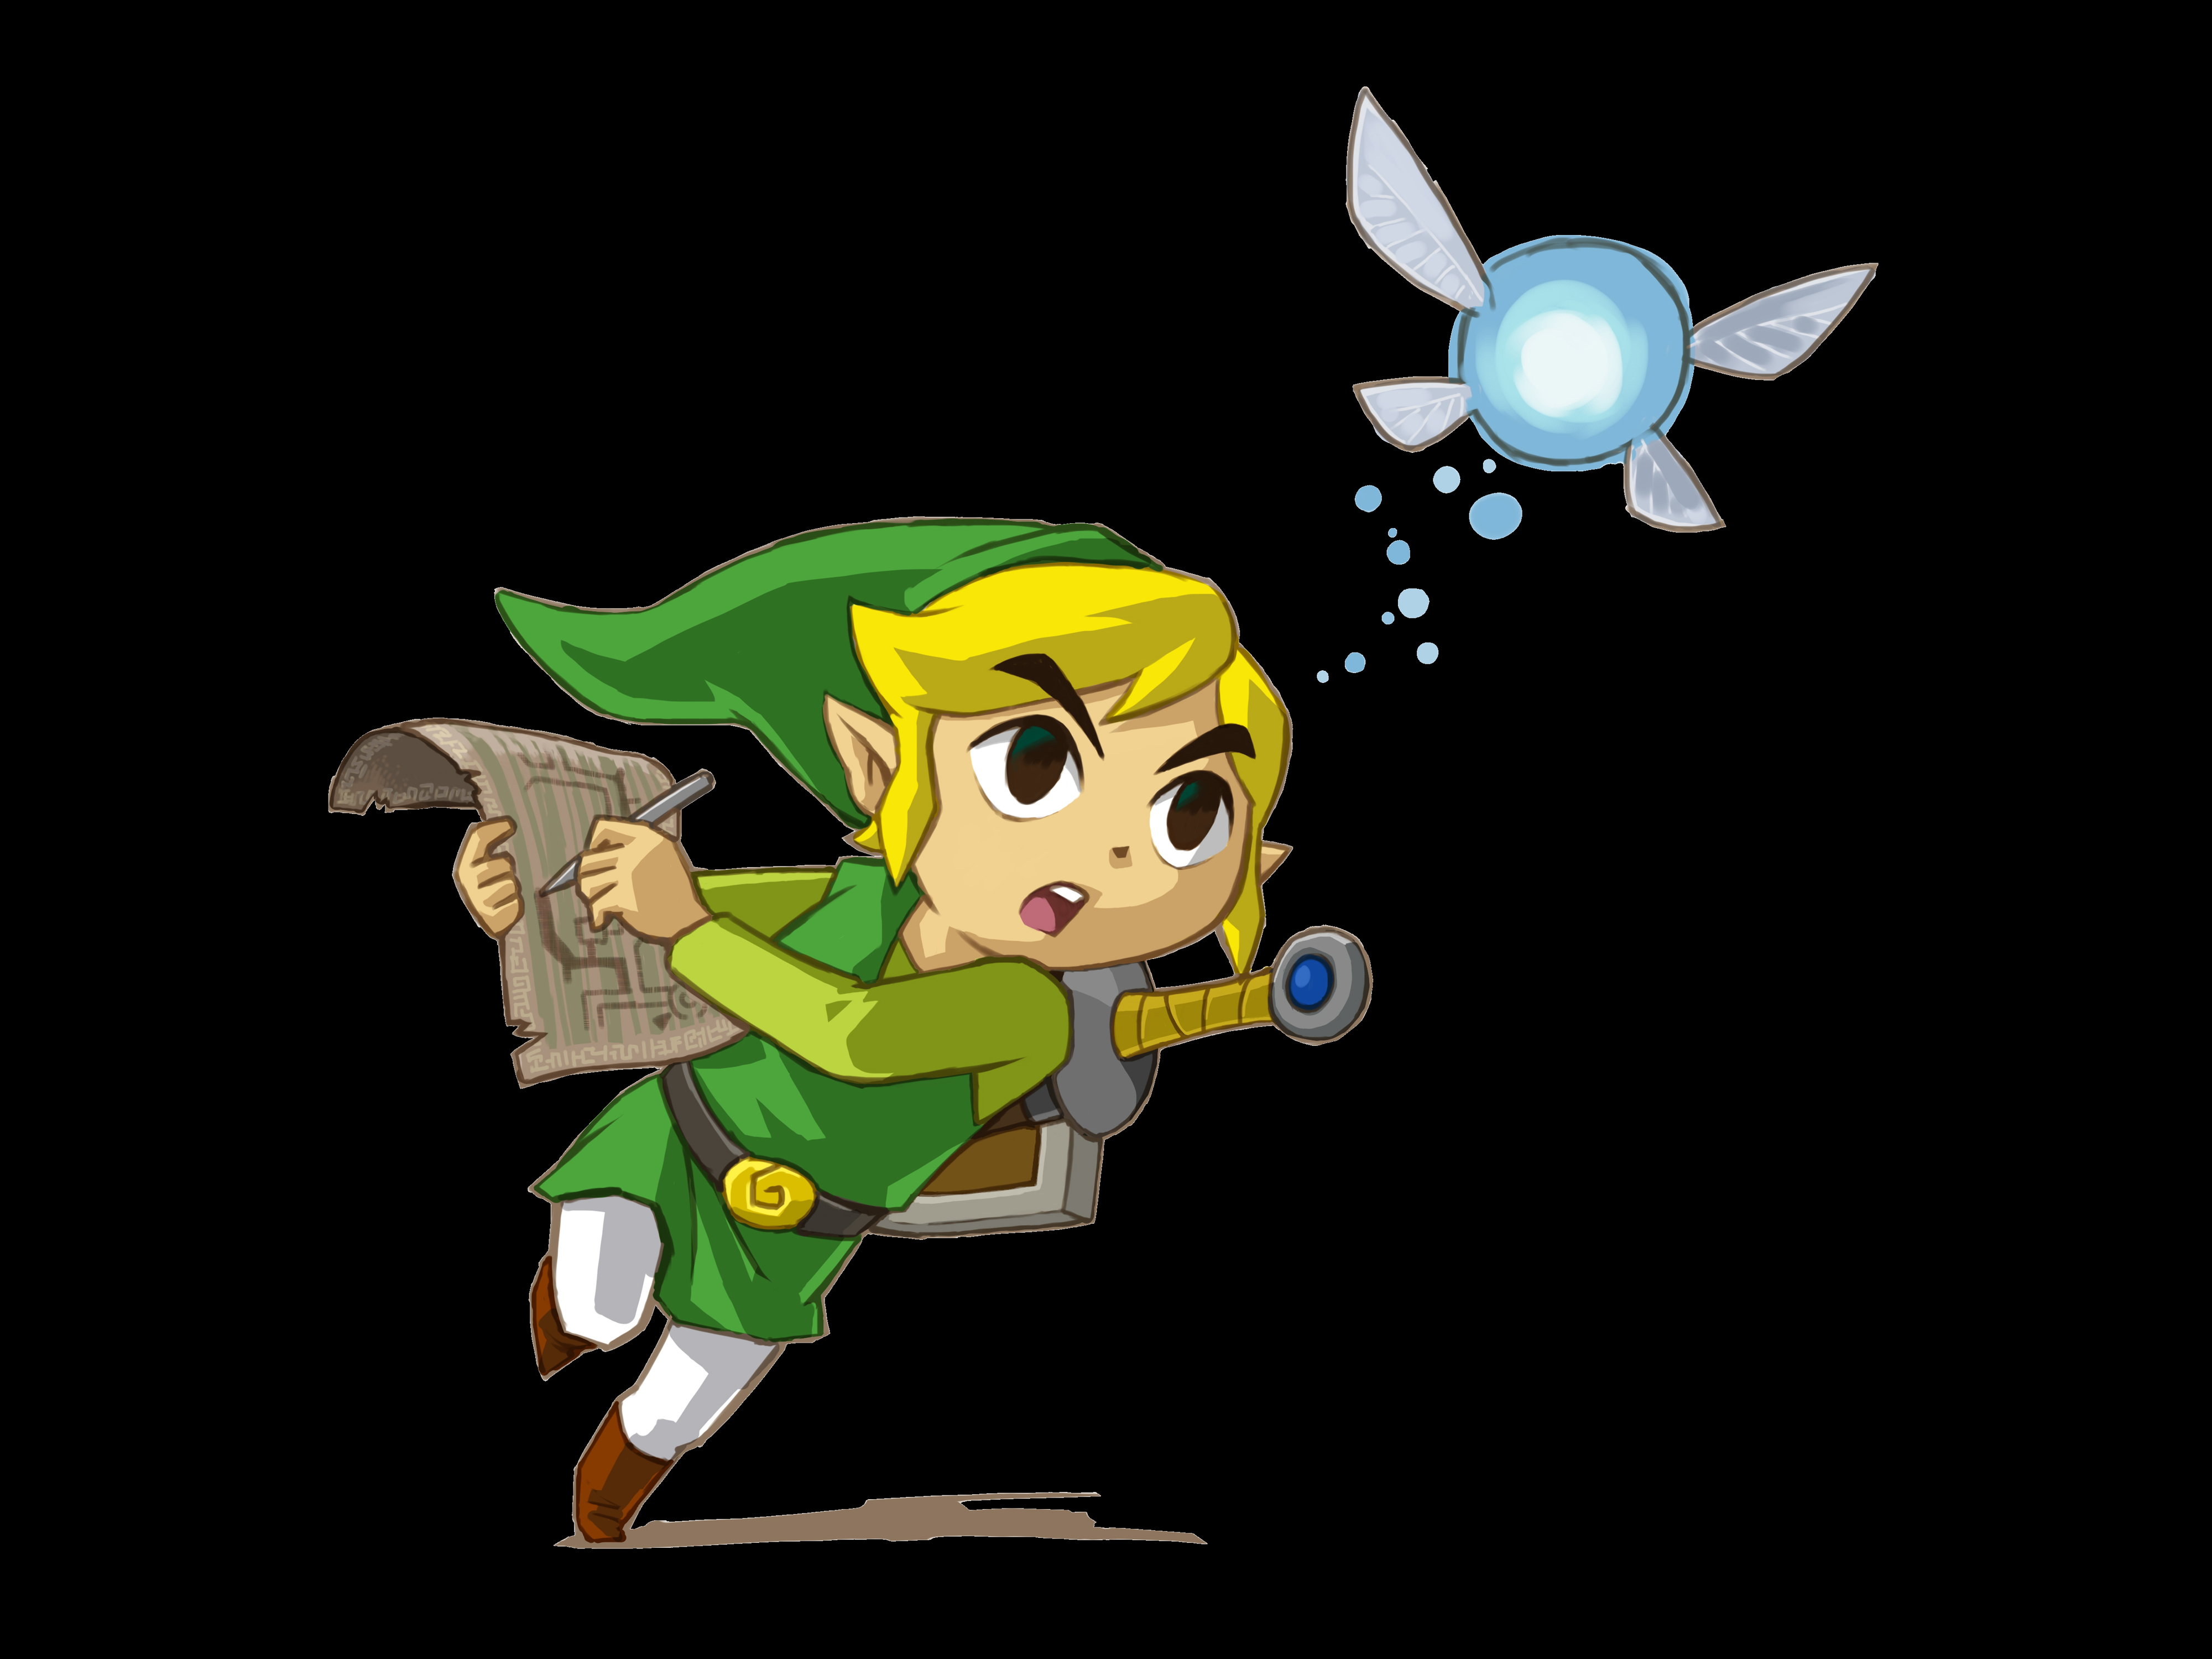 Video Game The Legend of Zelda: Spirit Tracks HD Wallpaper | Background Image